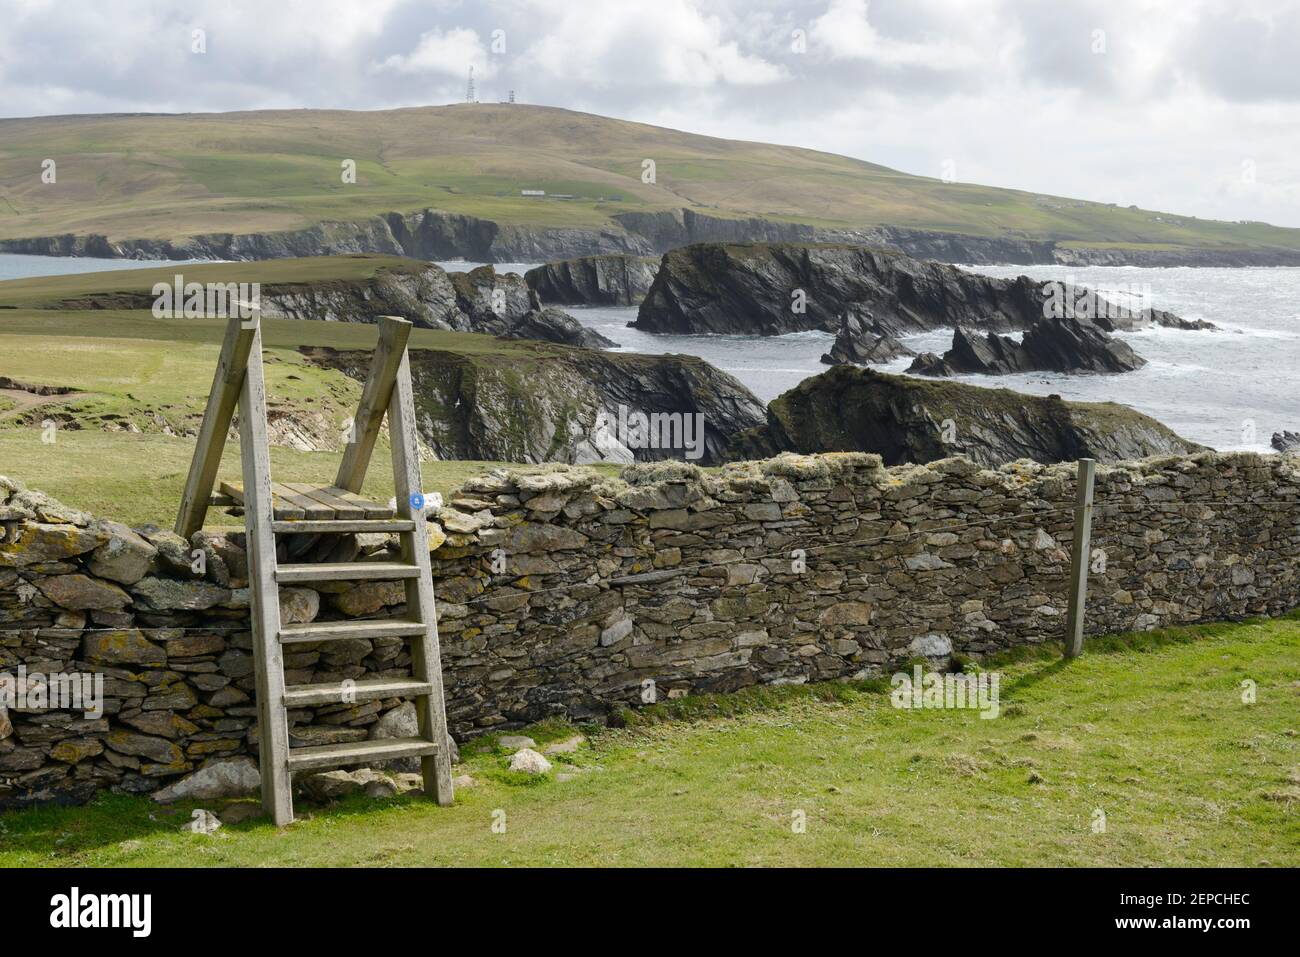 Un stile de madera que se extiende a lo largo de una pared de piedra seca en la isla de San Niniano, Shetland. Foto de stock